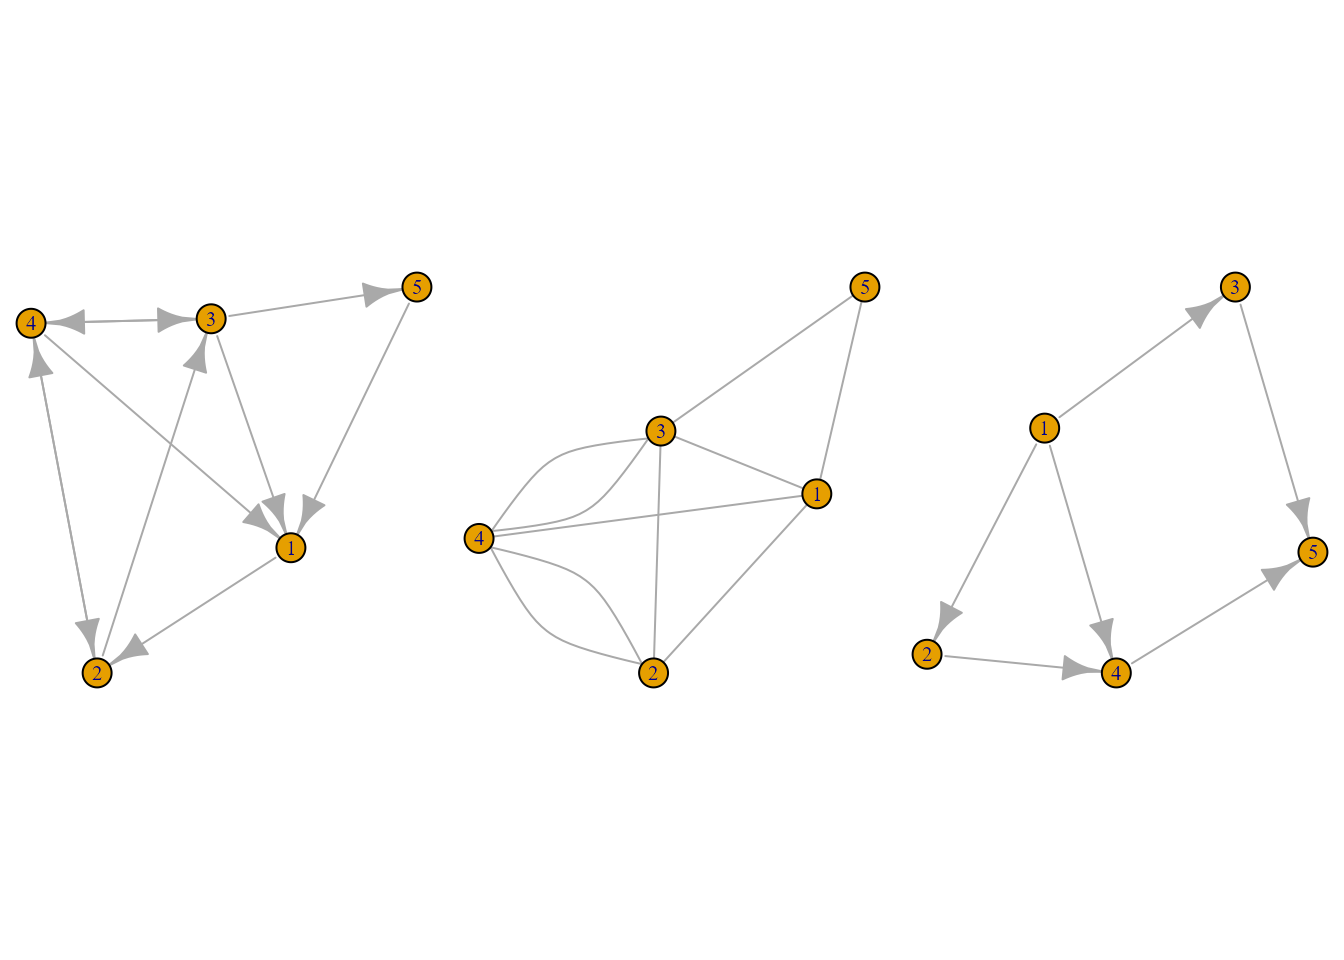 De izquierda a derecha: grafo dirigido, grafo no dirigido y grafo sencillo.